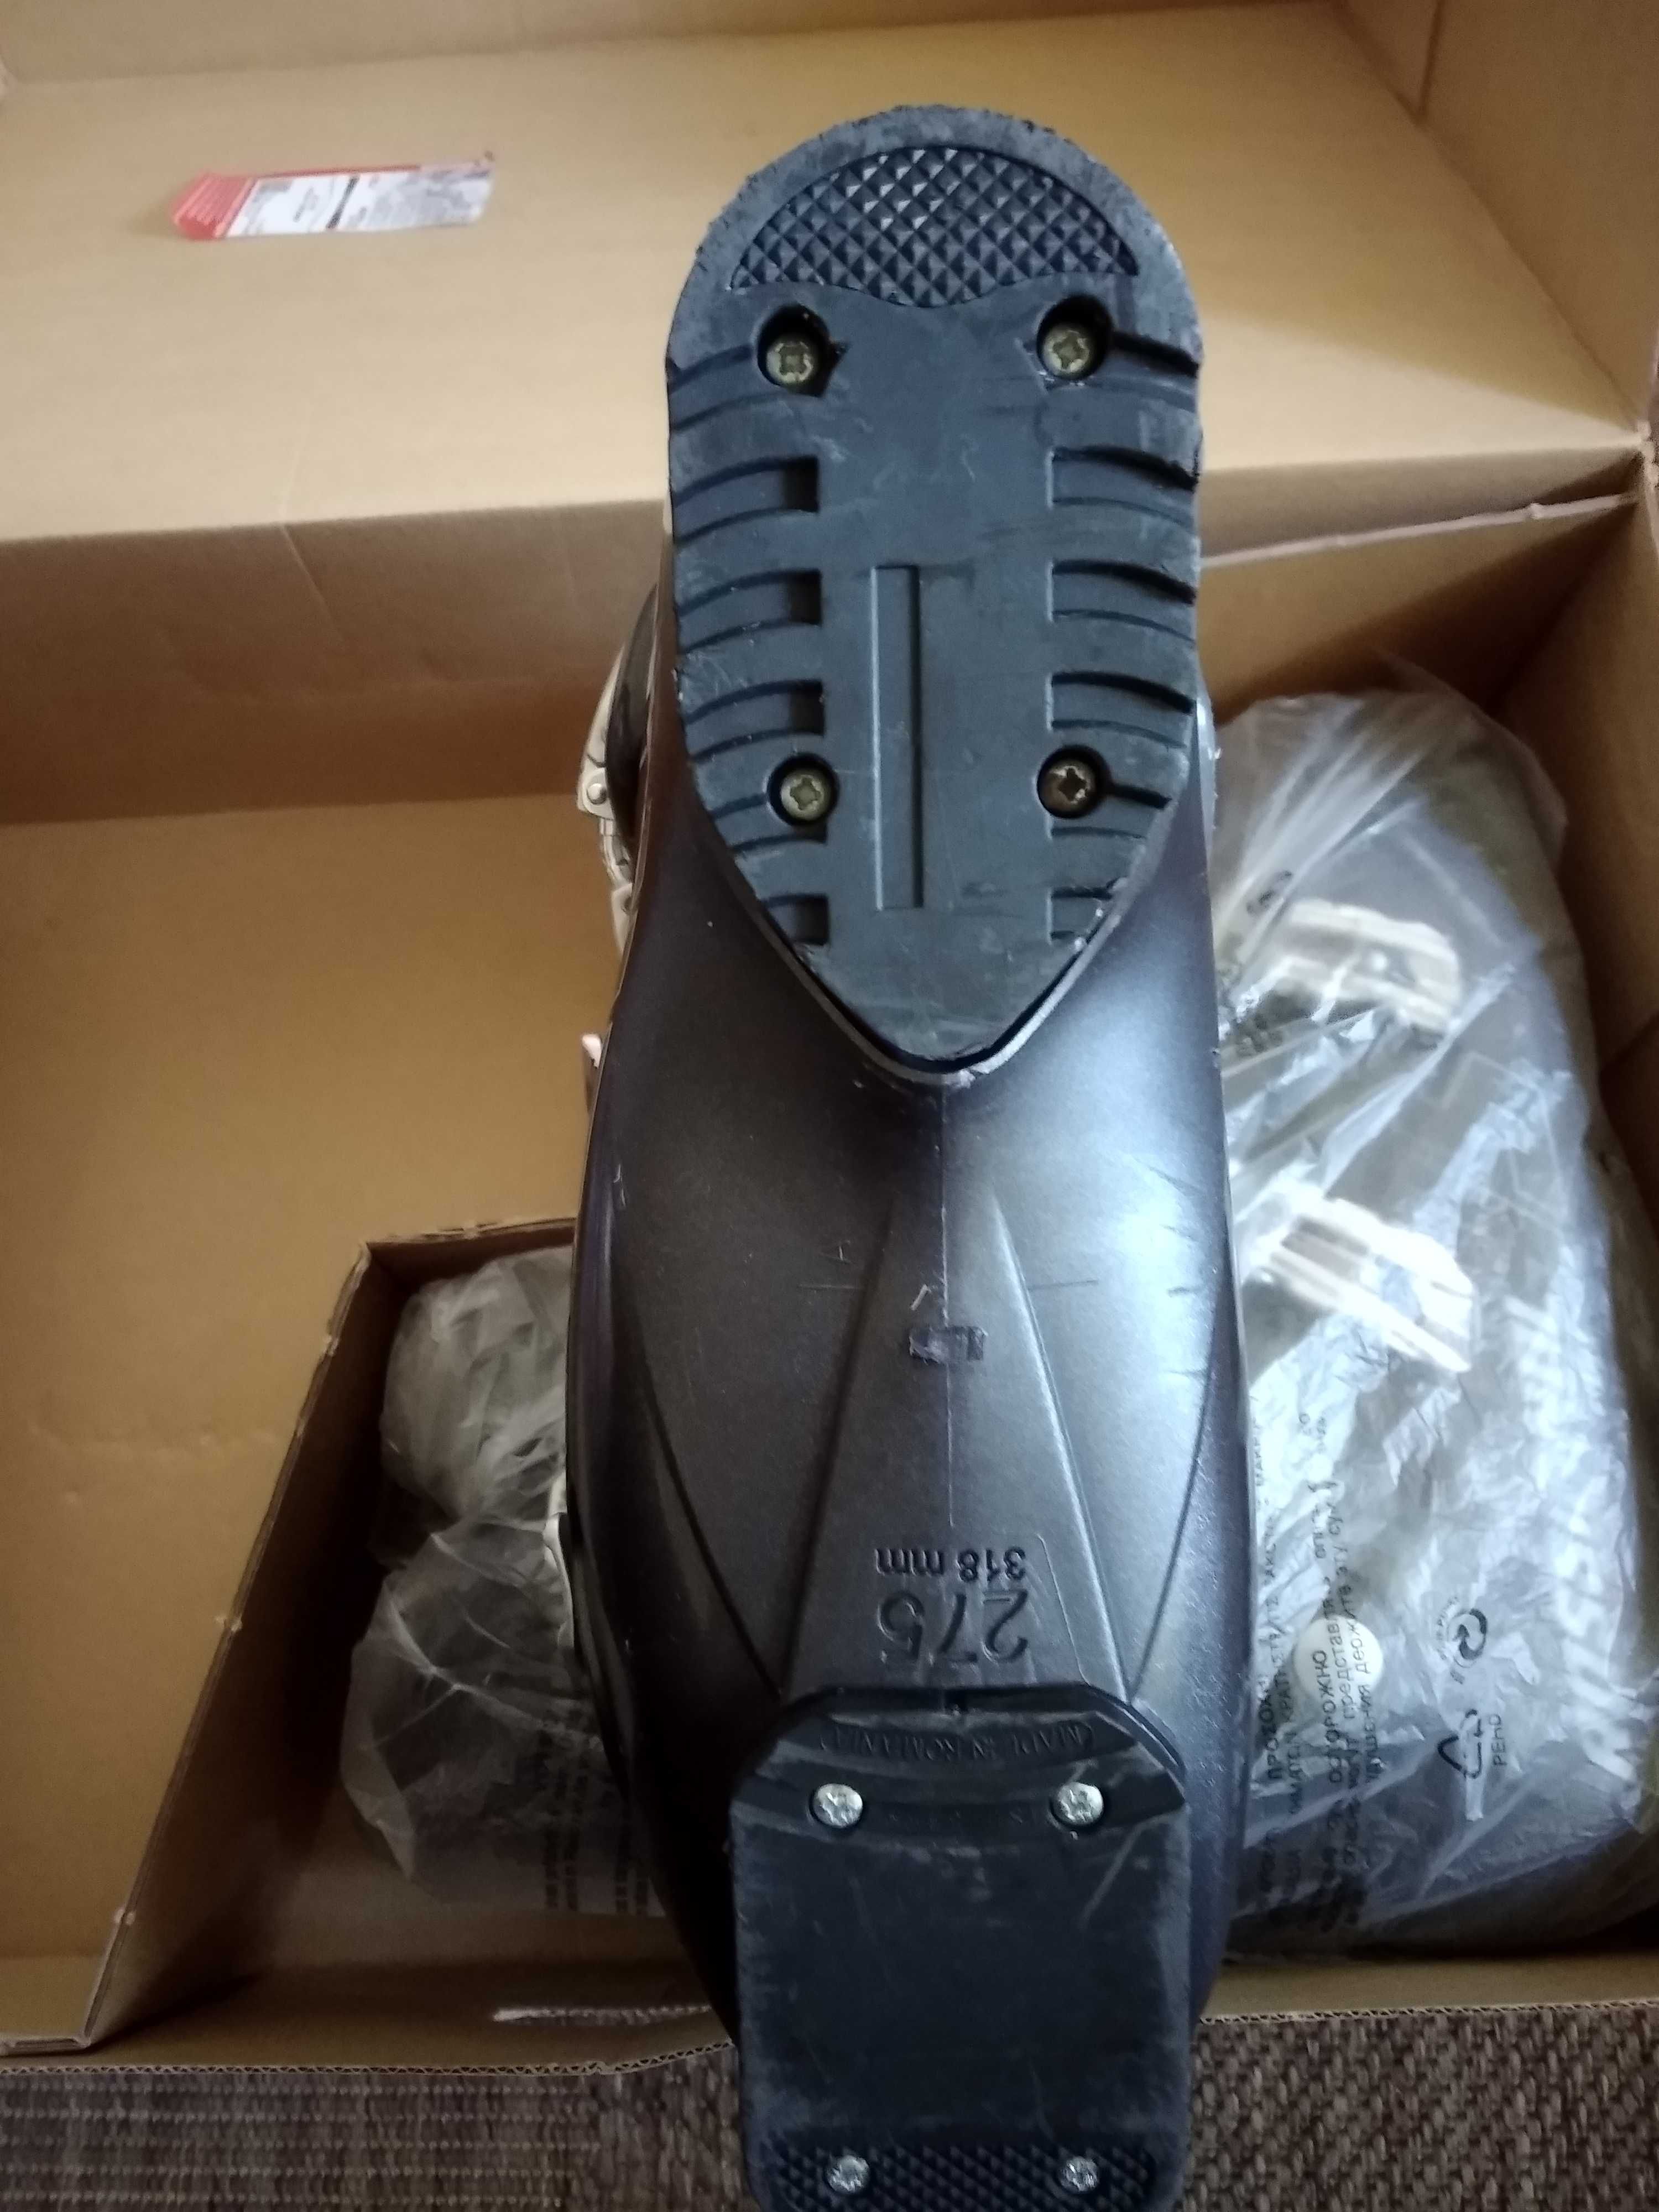 Ски обувки ROSSIGNOL Alias Sensor 80 размер 43 (27,5)